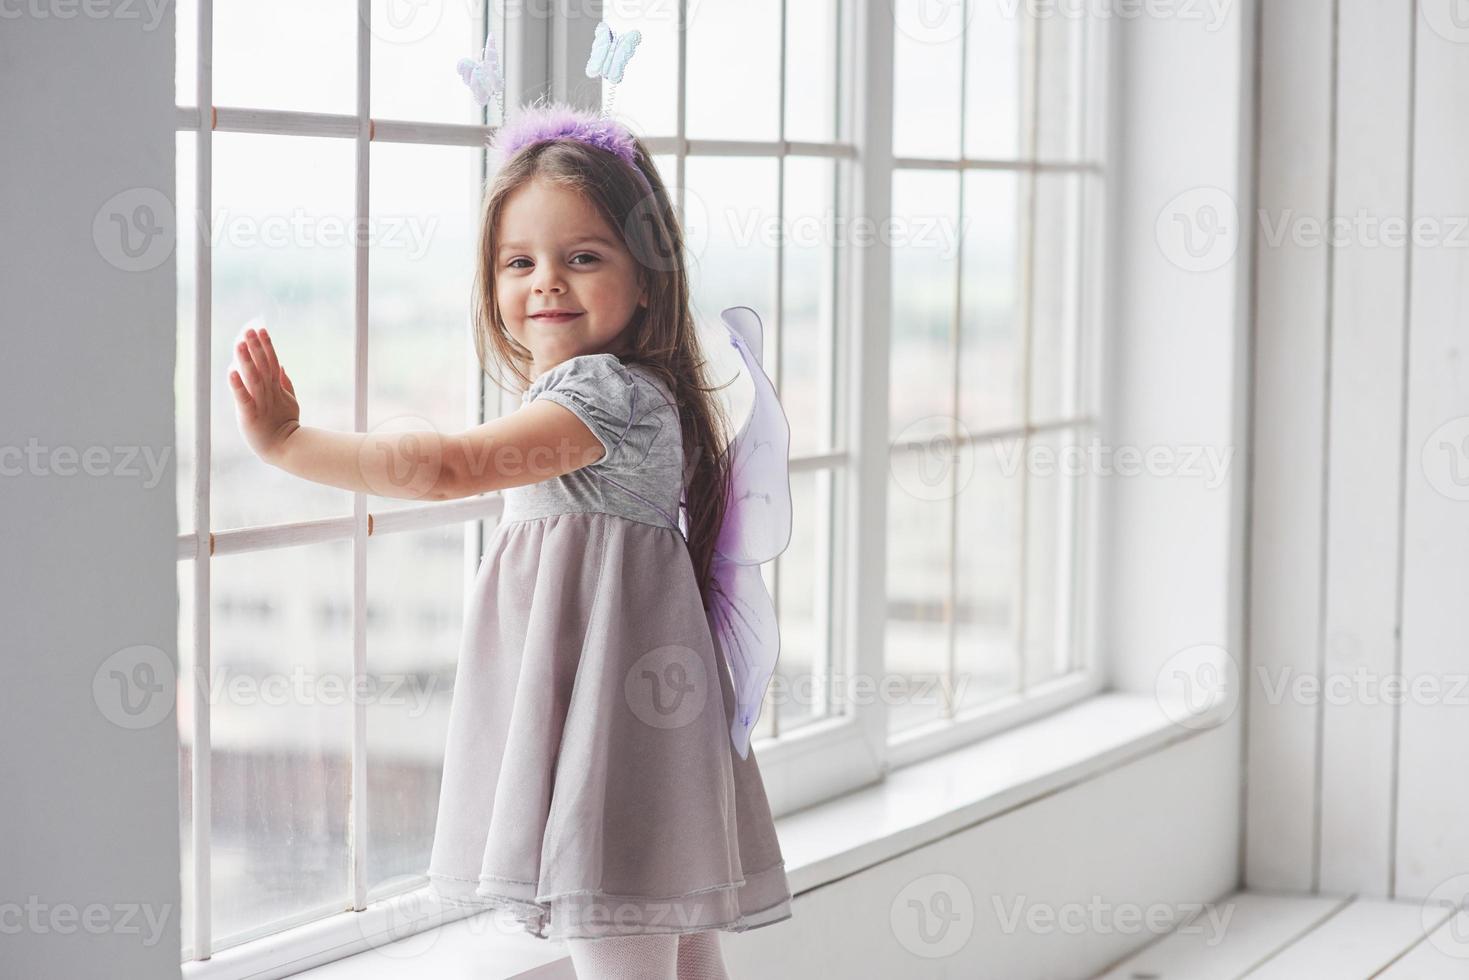 vidrör glaset. trevlig liten flicka i sagans slitage står nära fönstren och tittar in i kameran foto